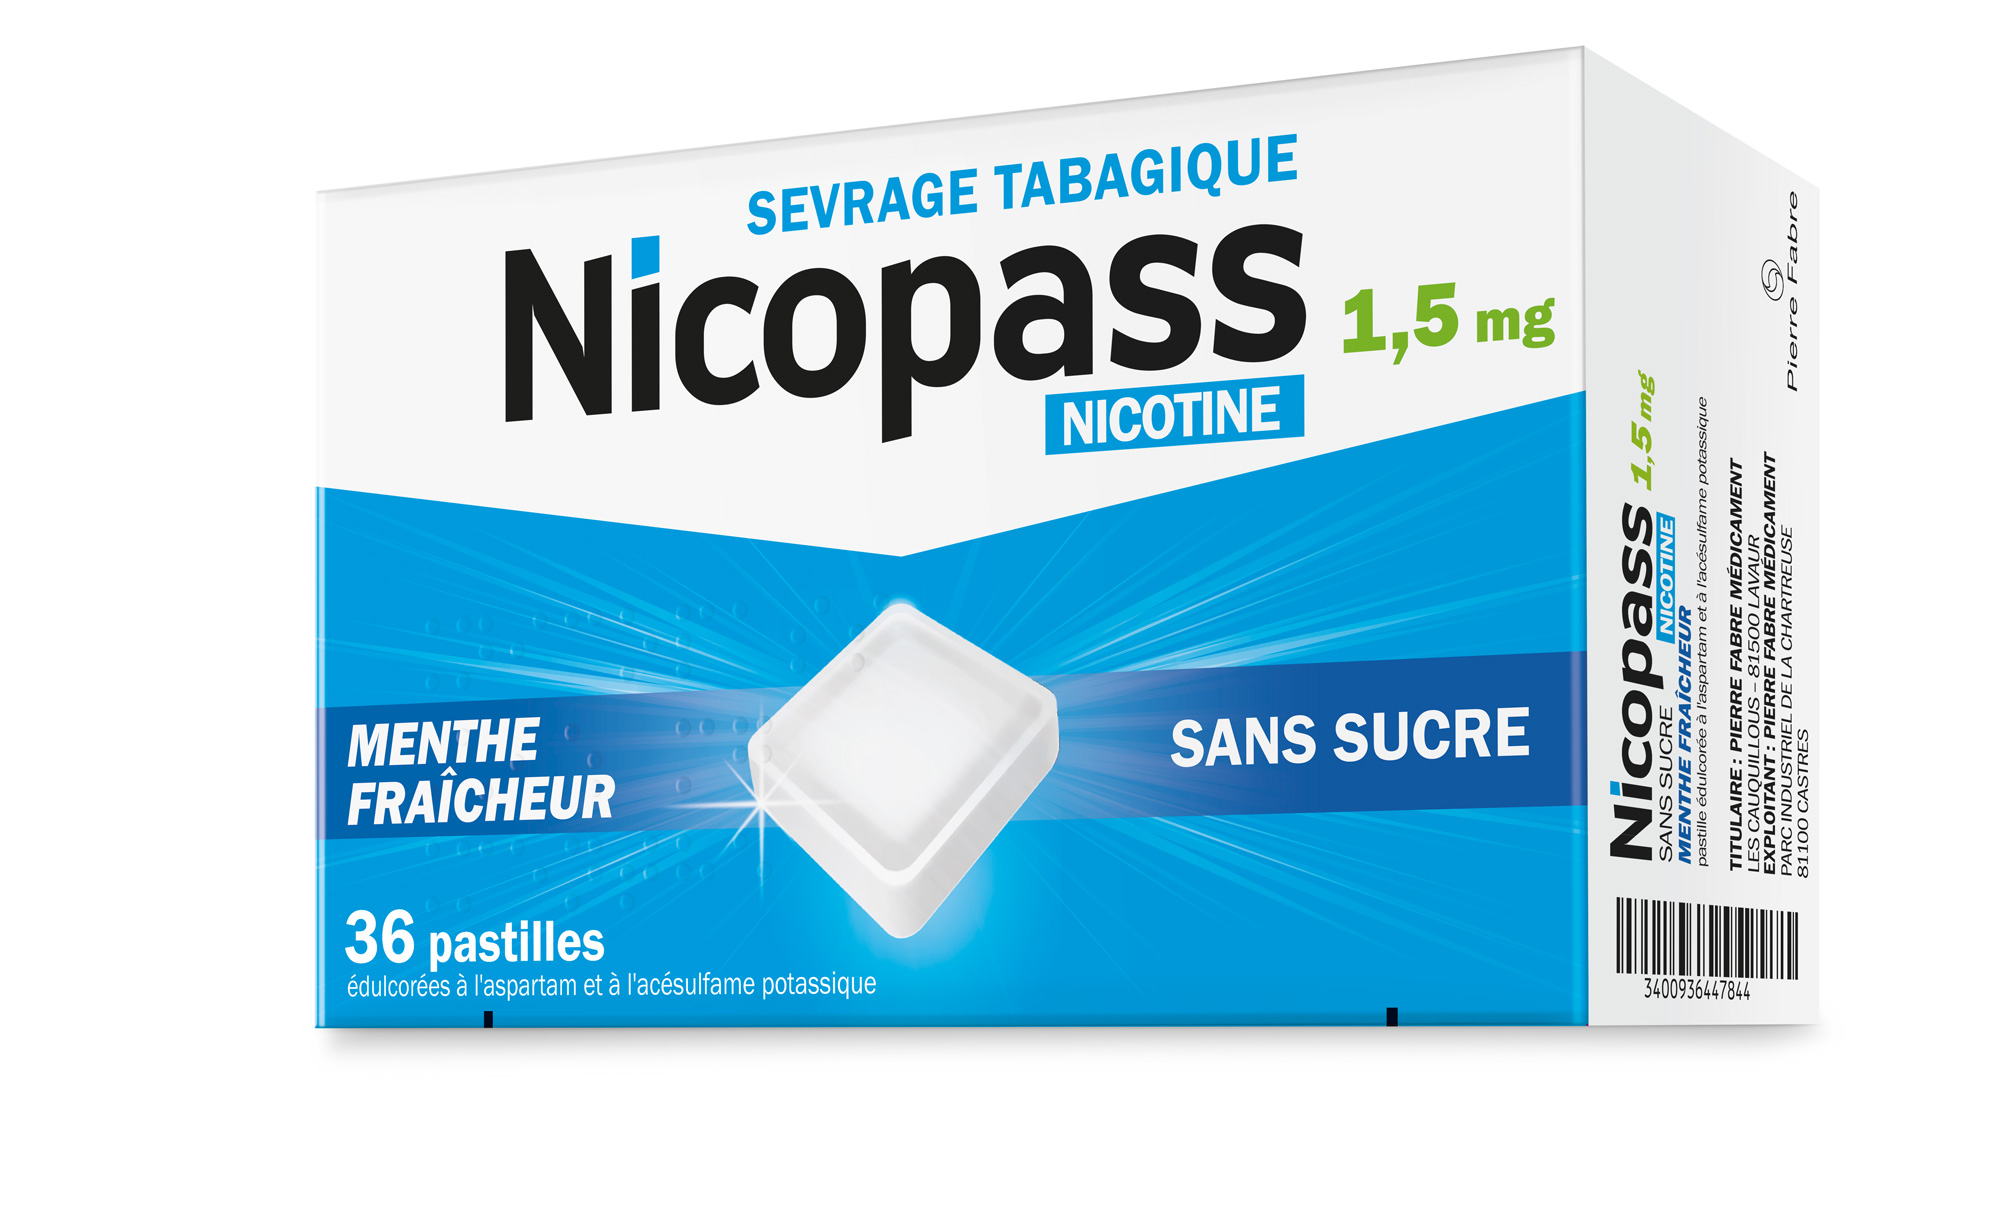 Photo de conditionnement <span class='vidalbox-gamme-product'>(NICOPASS 1,5 mg past sans sucre menthe fraîcheur)</span>